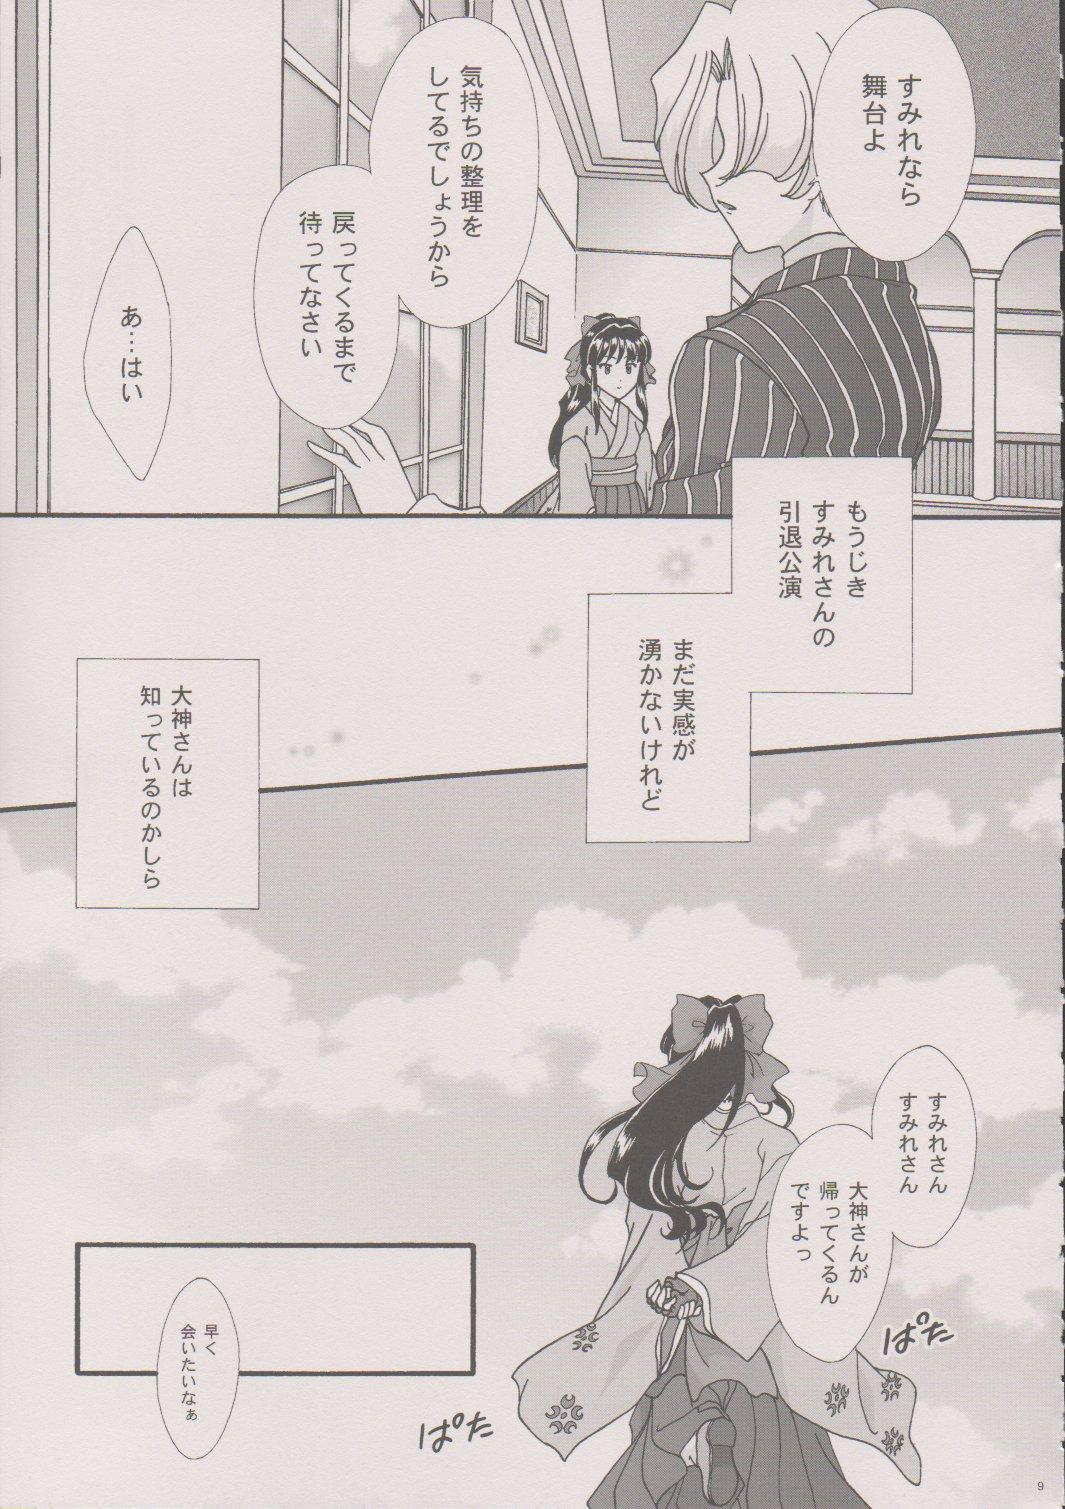 Blackcock [TSK (Fuuga Utsura)] Maihime ~Karen~ 6 Teito Yori. (Sakura Wars) - Sakura taisen Oral Sex - Page 8